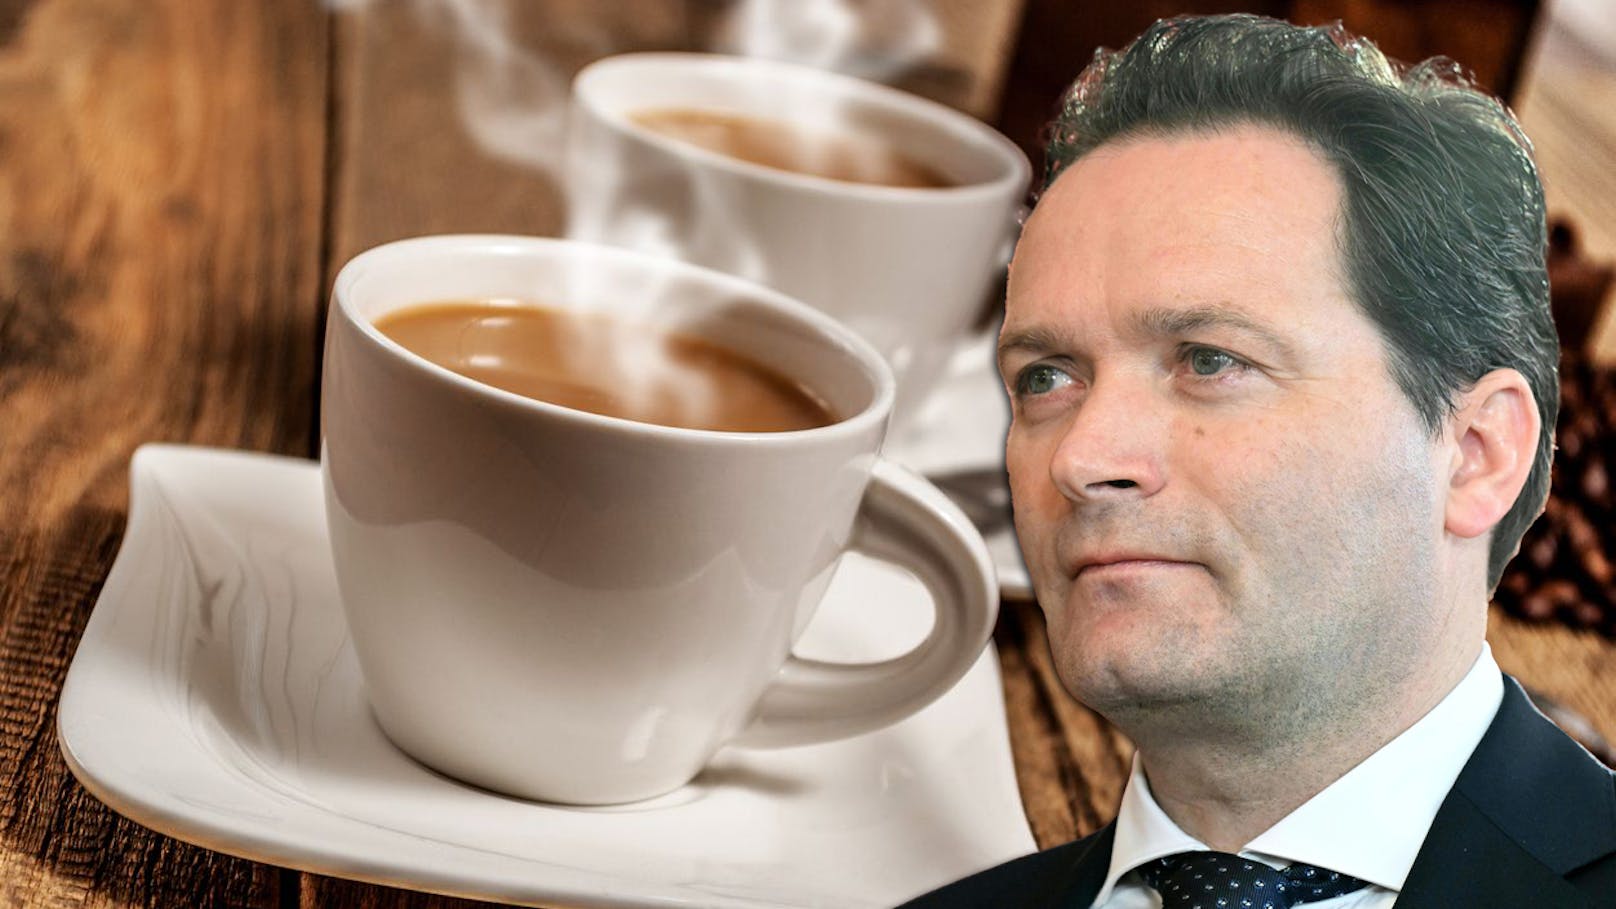 Streit um unseren Kaffee: EU will Regeln verschärfen